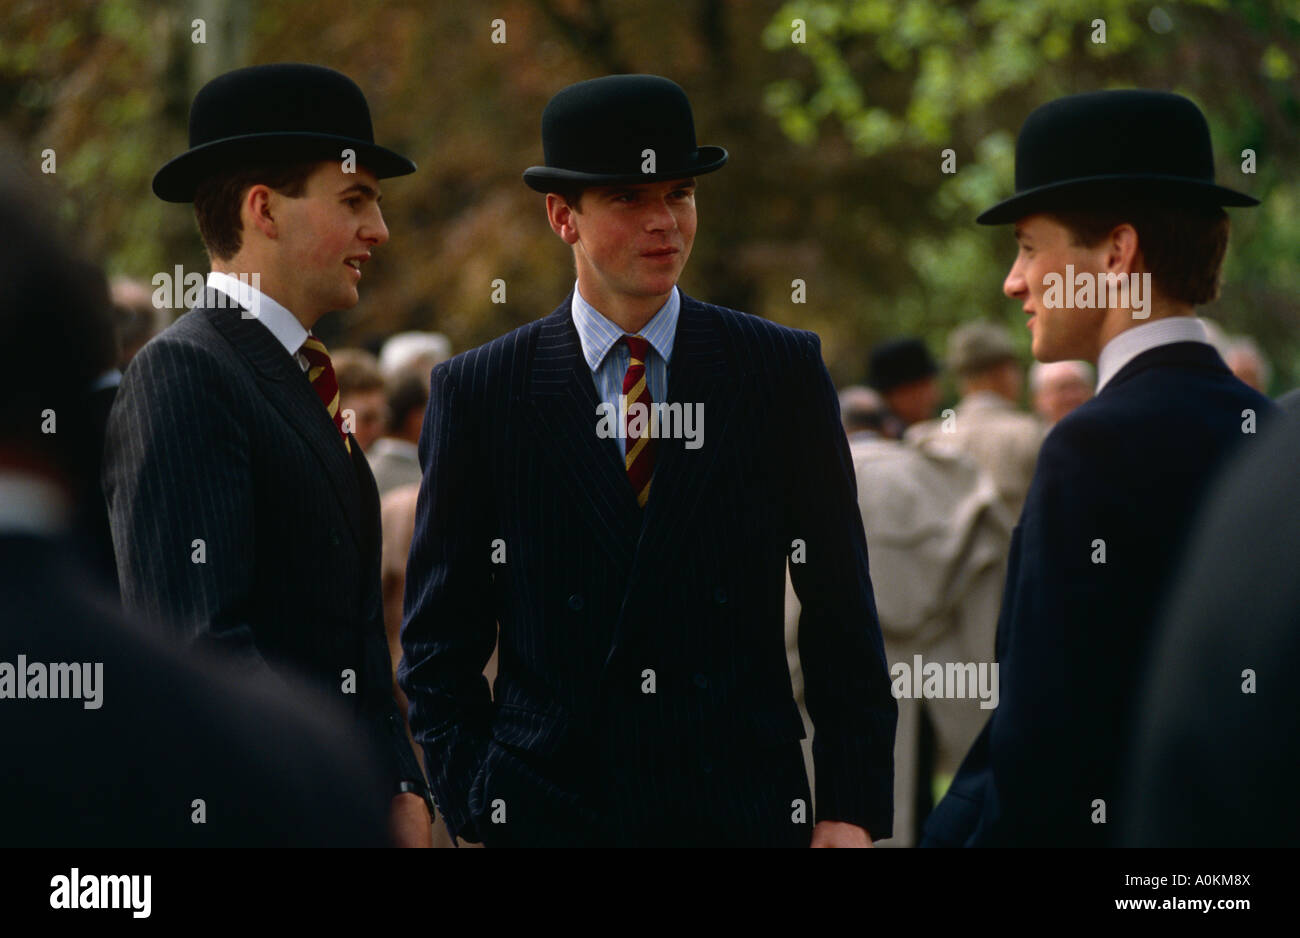 Les jeunes officiers de cavalerie chapeau melon à Londres Photo Stock -  Alamy